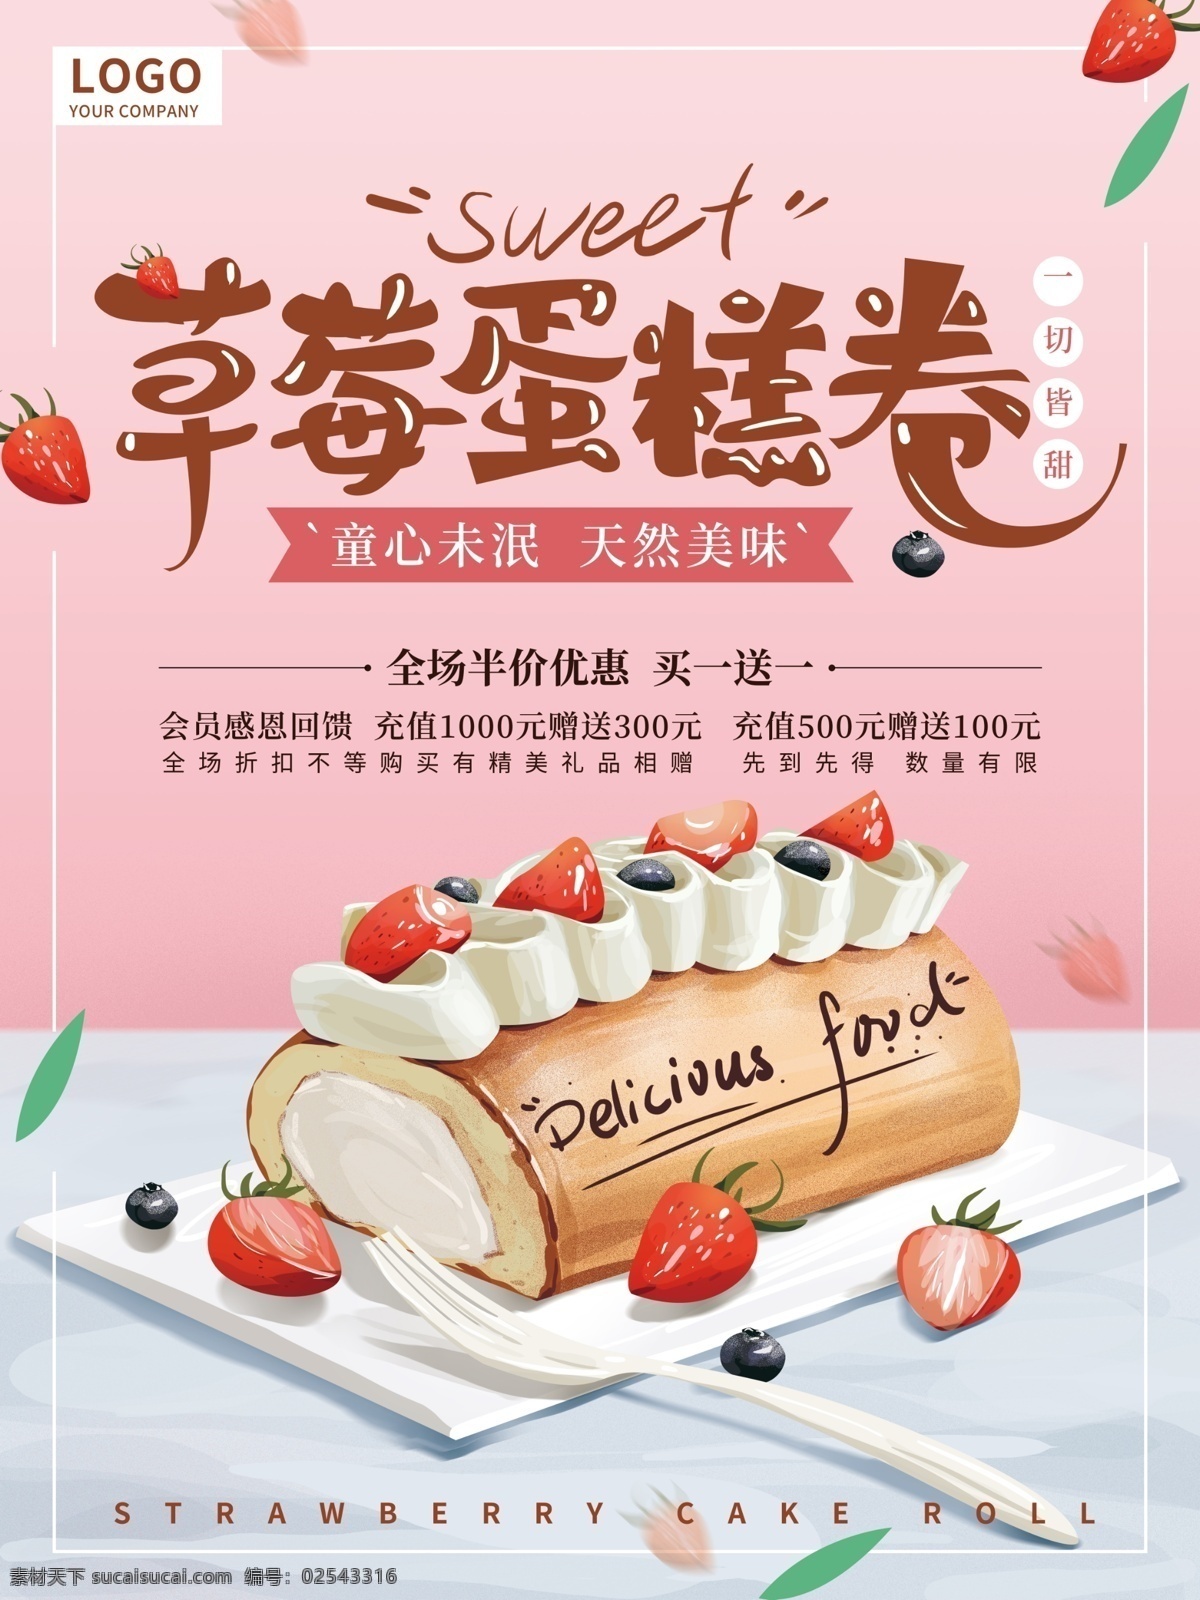 原创 手绘 美味 甜品 海报 促销 草莓 蛋糕卷 毛巾卷 粉色 水果蛋糕 温馨 美食 美食海报